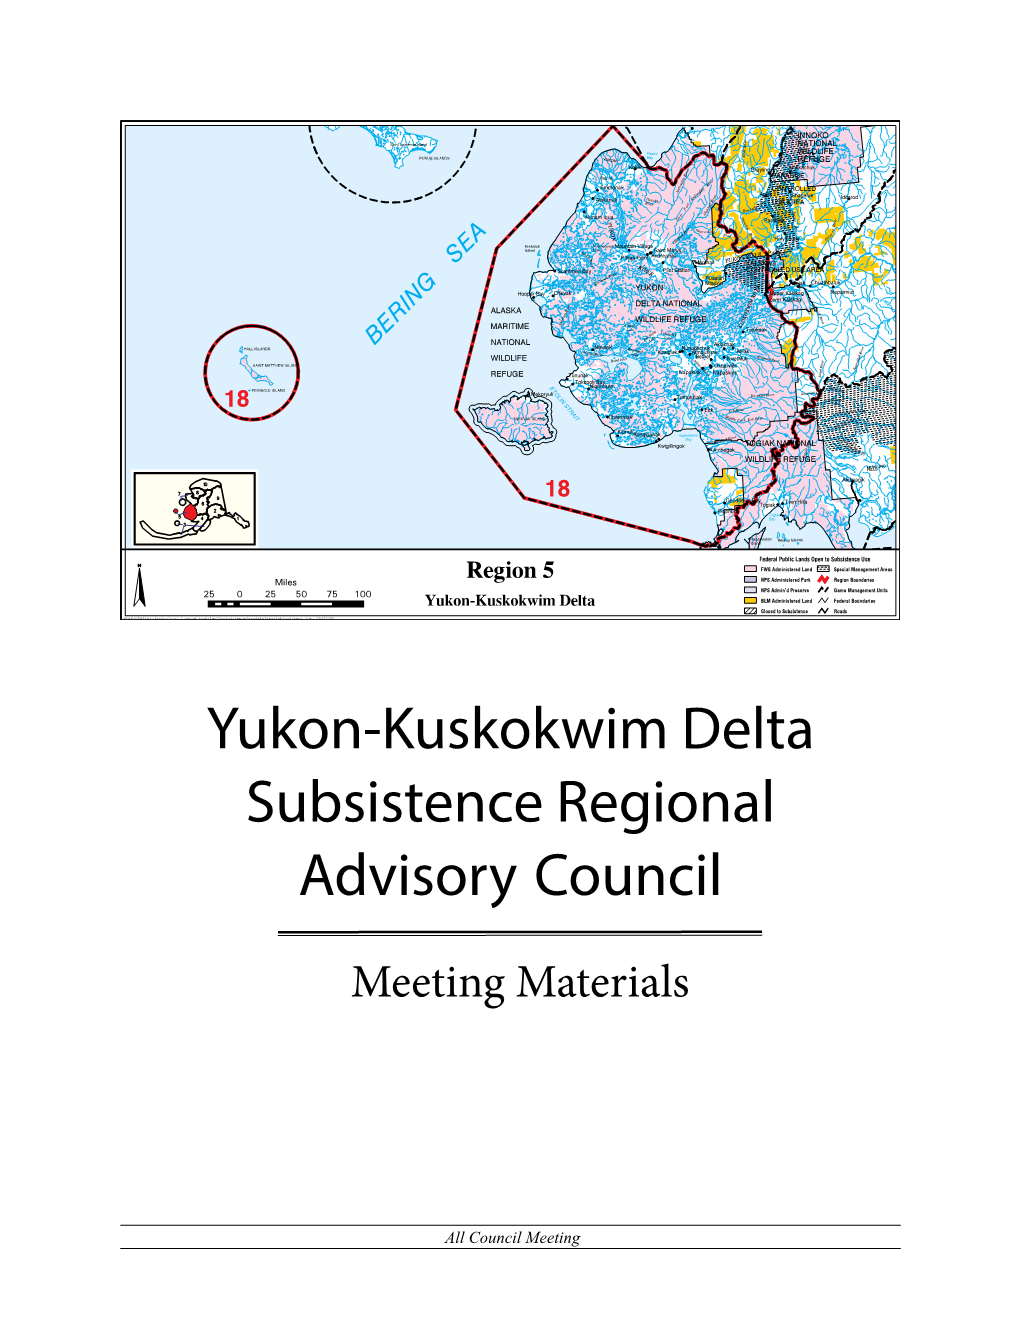 Yukon-Kuskokwim Delta Subsistence Regional Advisory Council